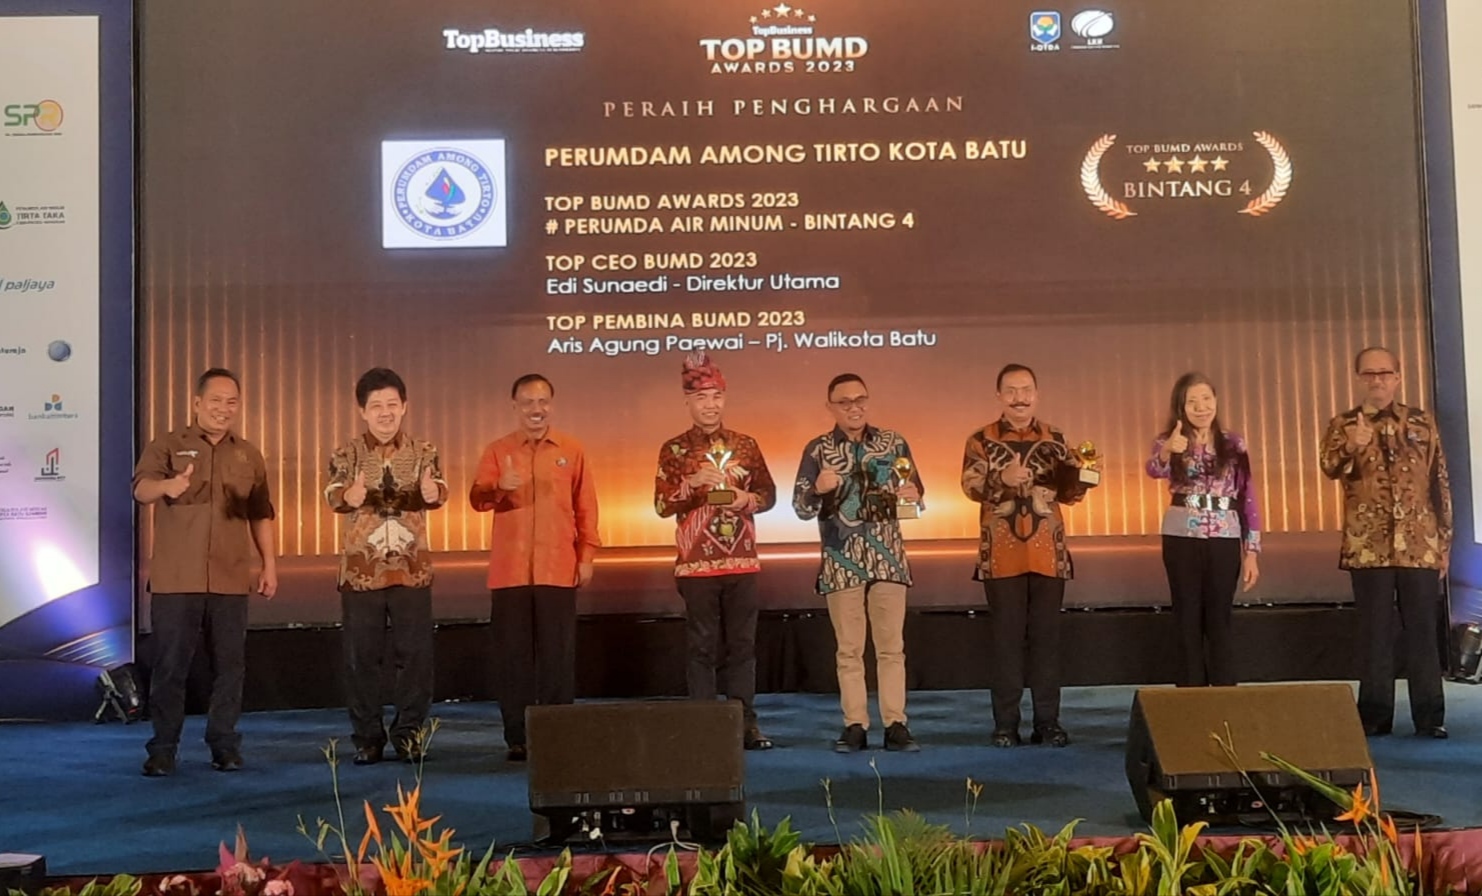 Perumdam Among Tirto Borong Penghargaan Top BUMD Award 2023